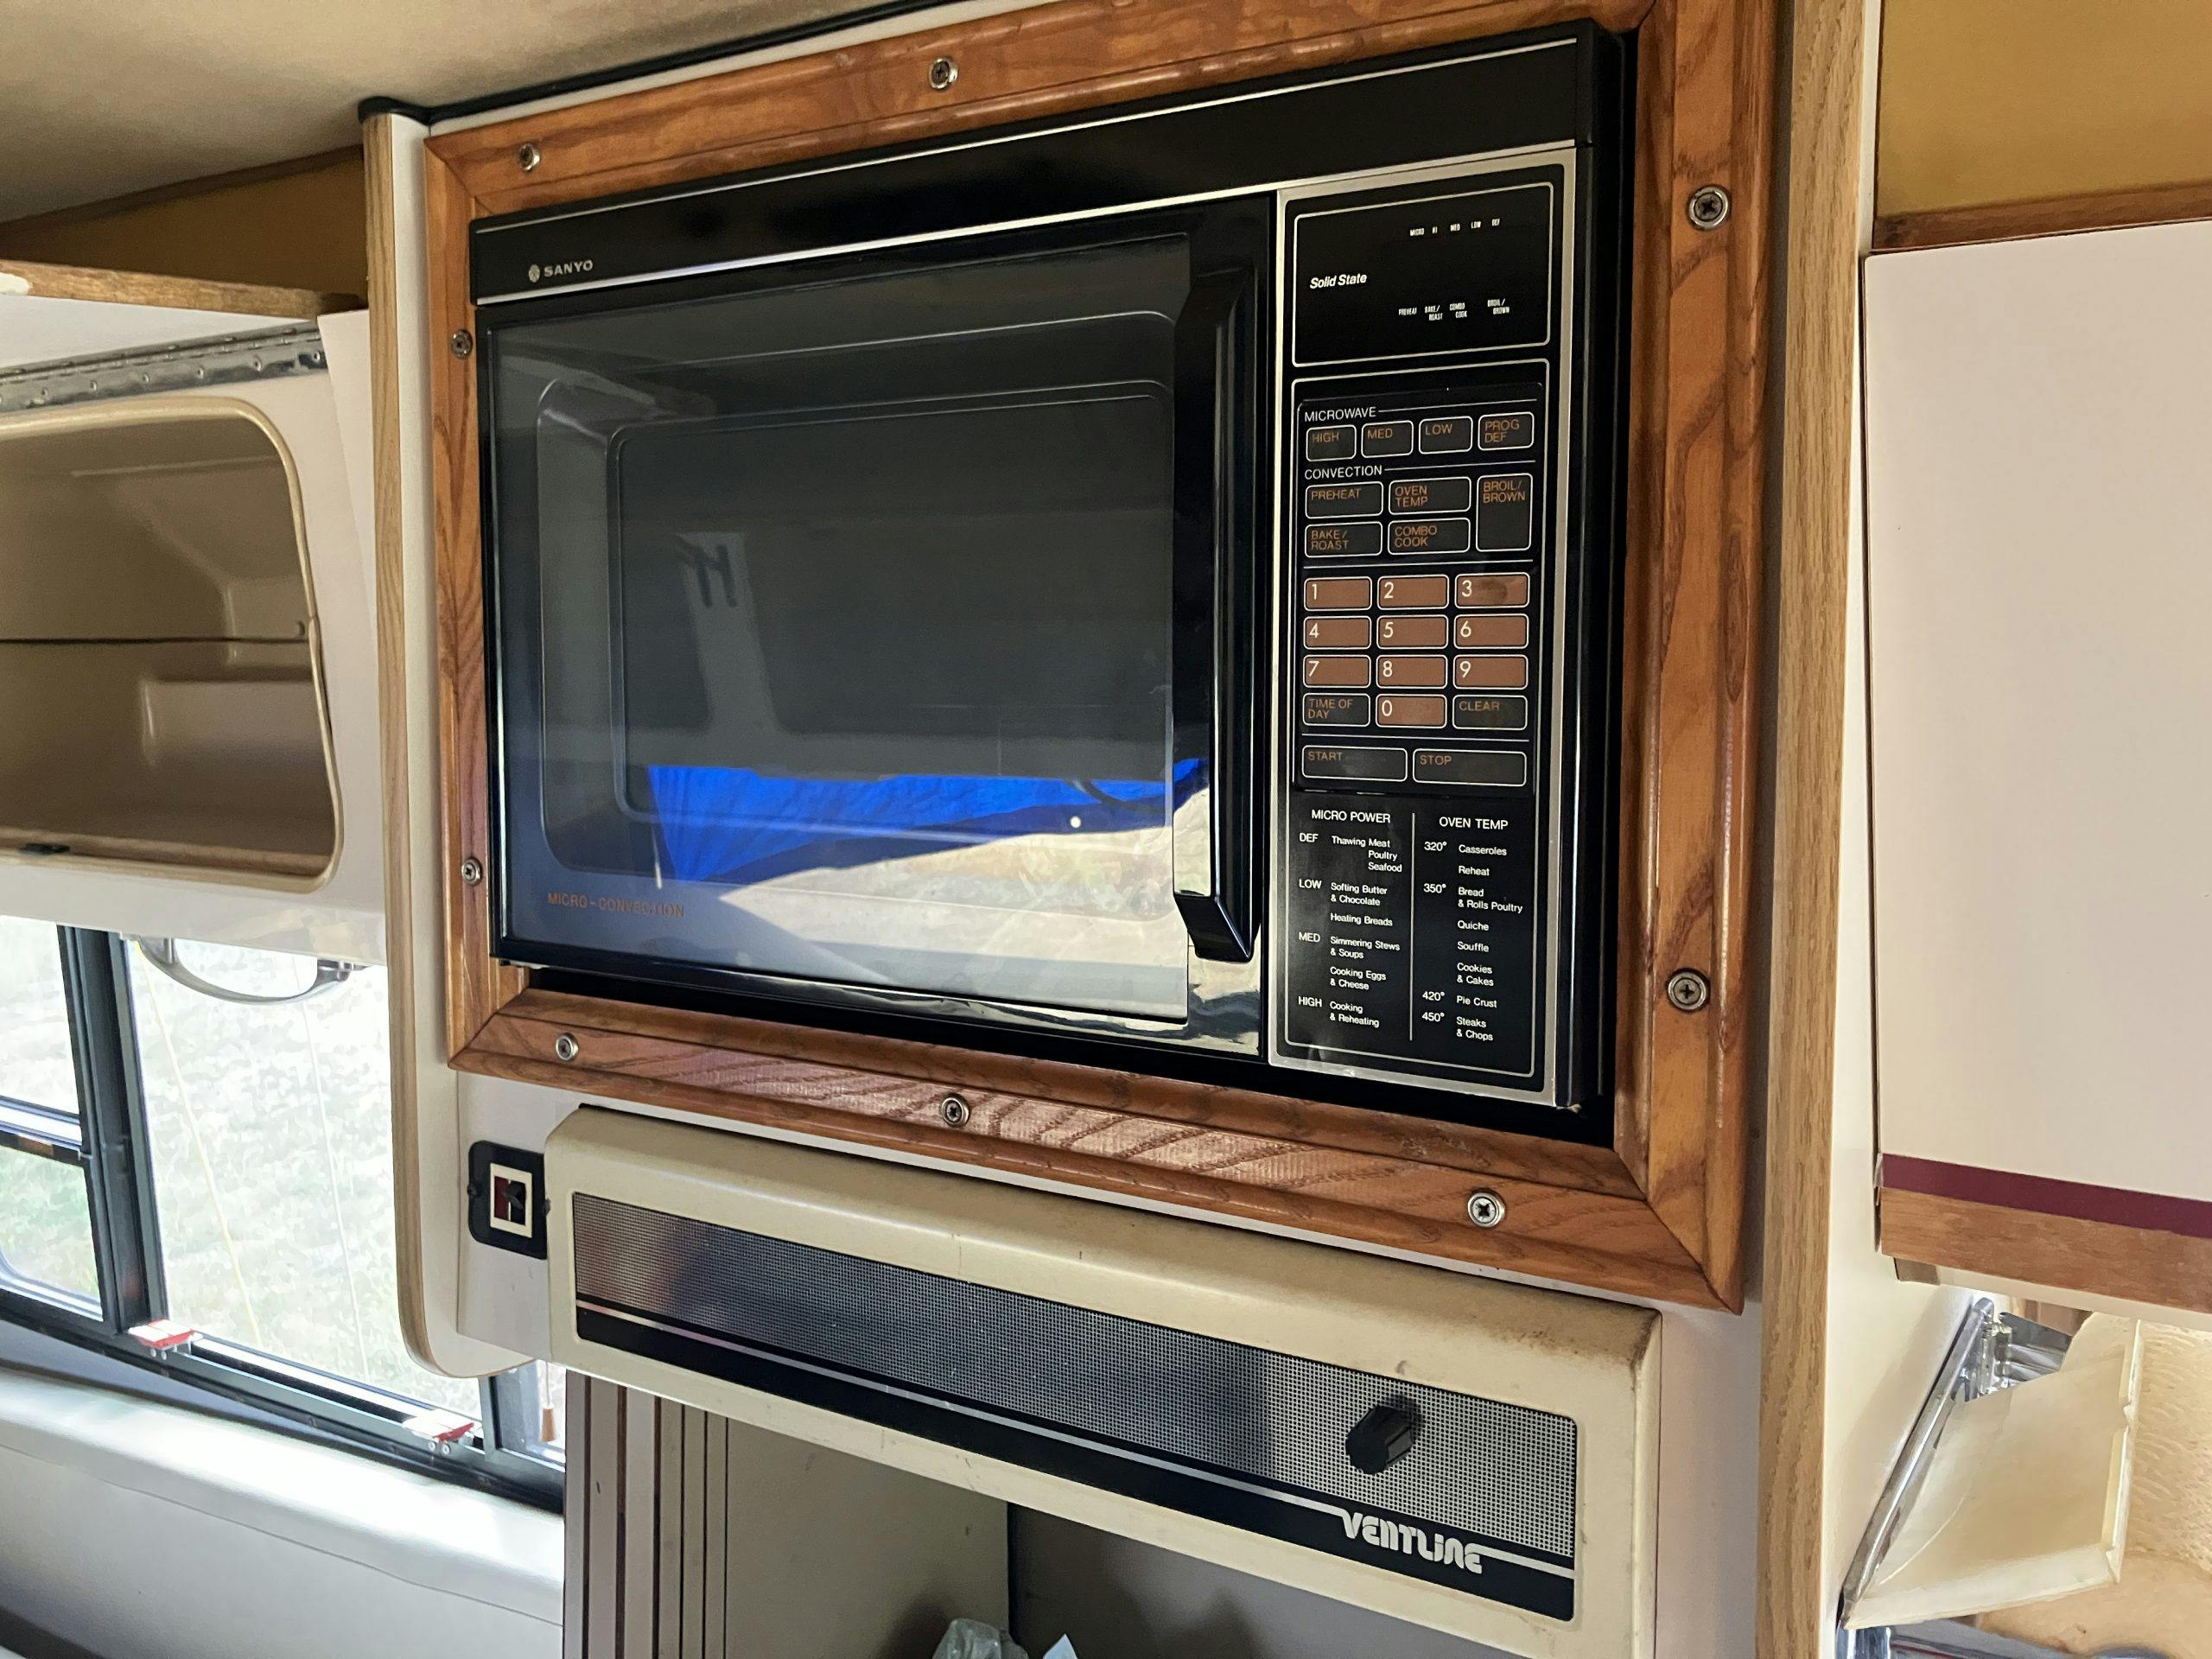 1987 EMC Eldorado Starfire RV interior microwave